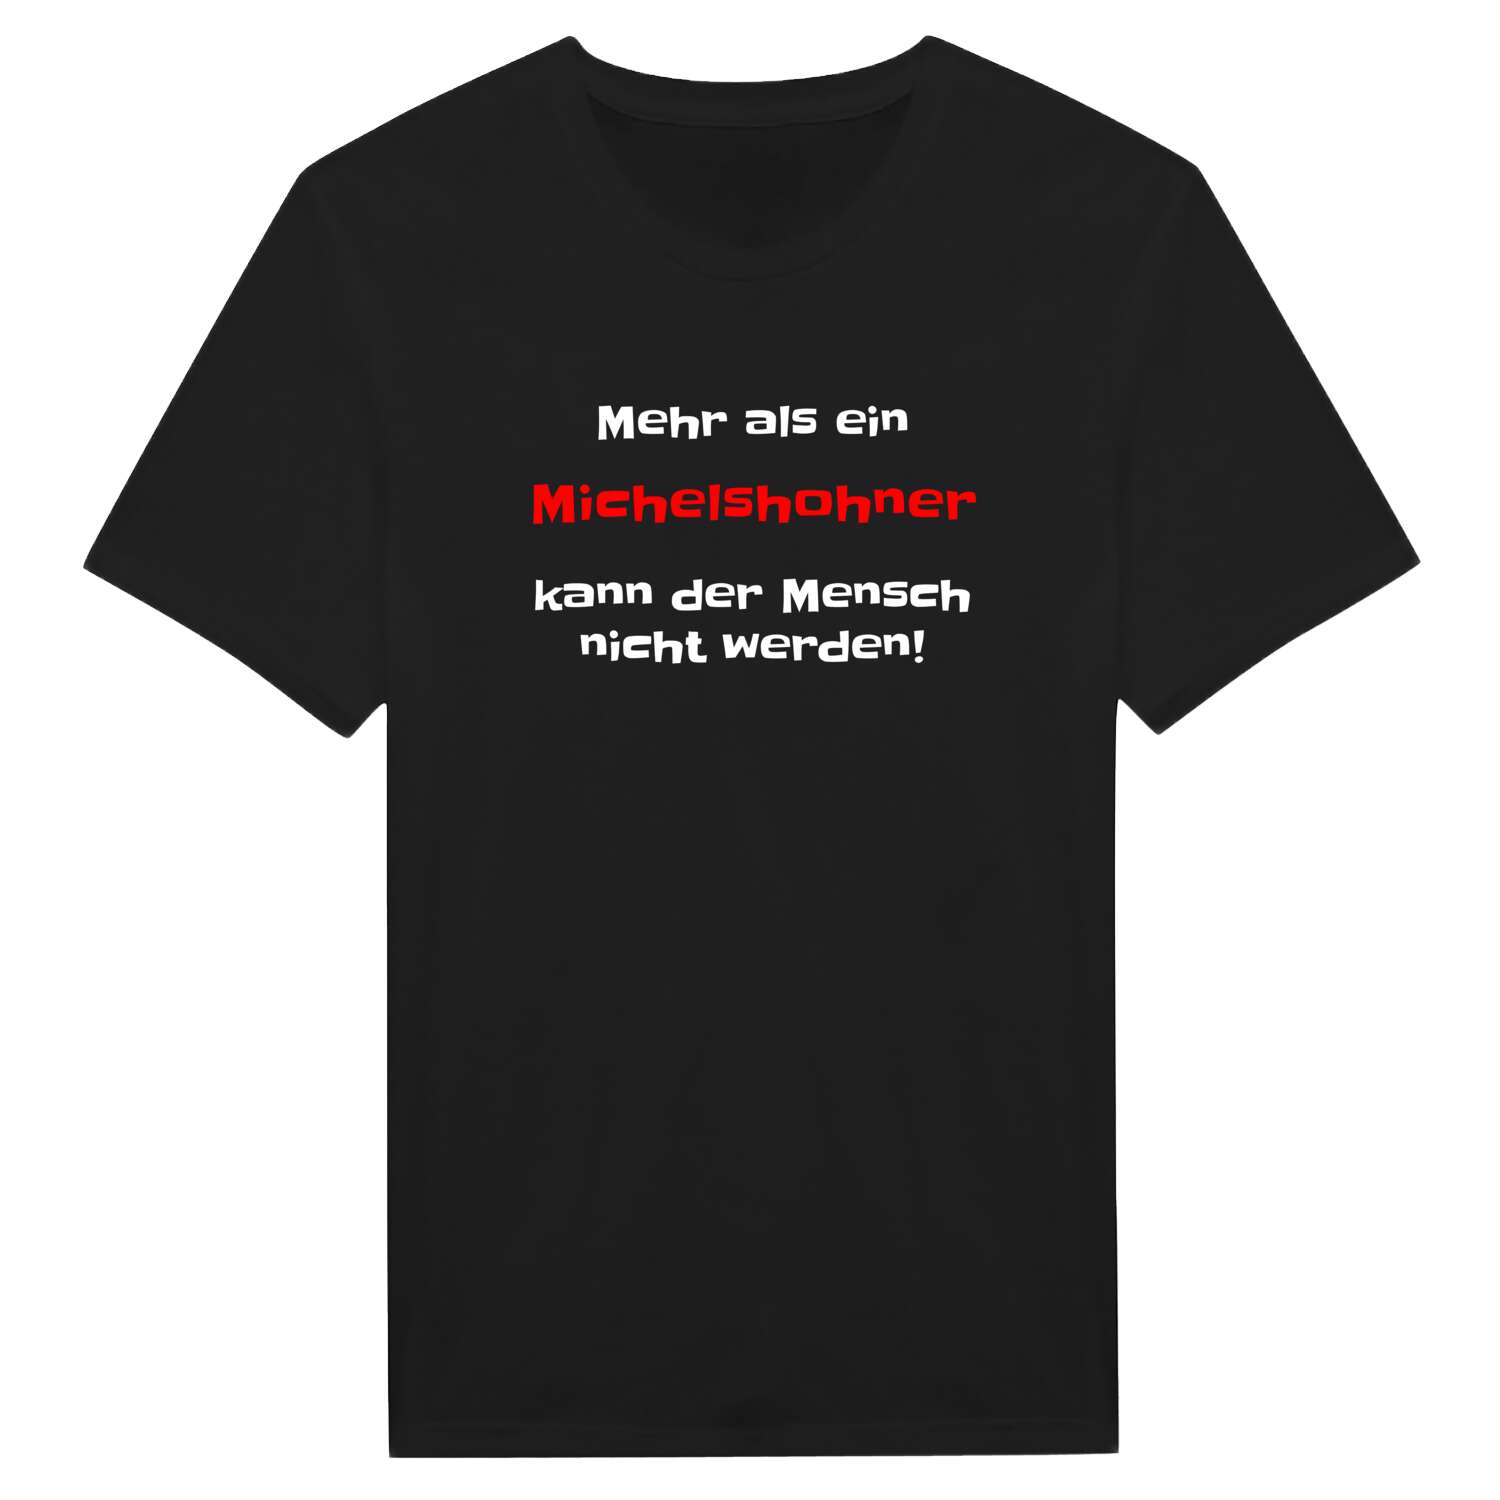 Michelshohn T-Shirt »Mehr als ein«